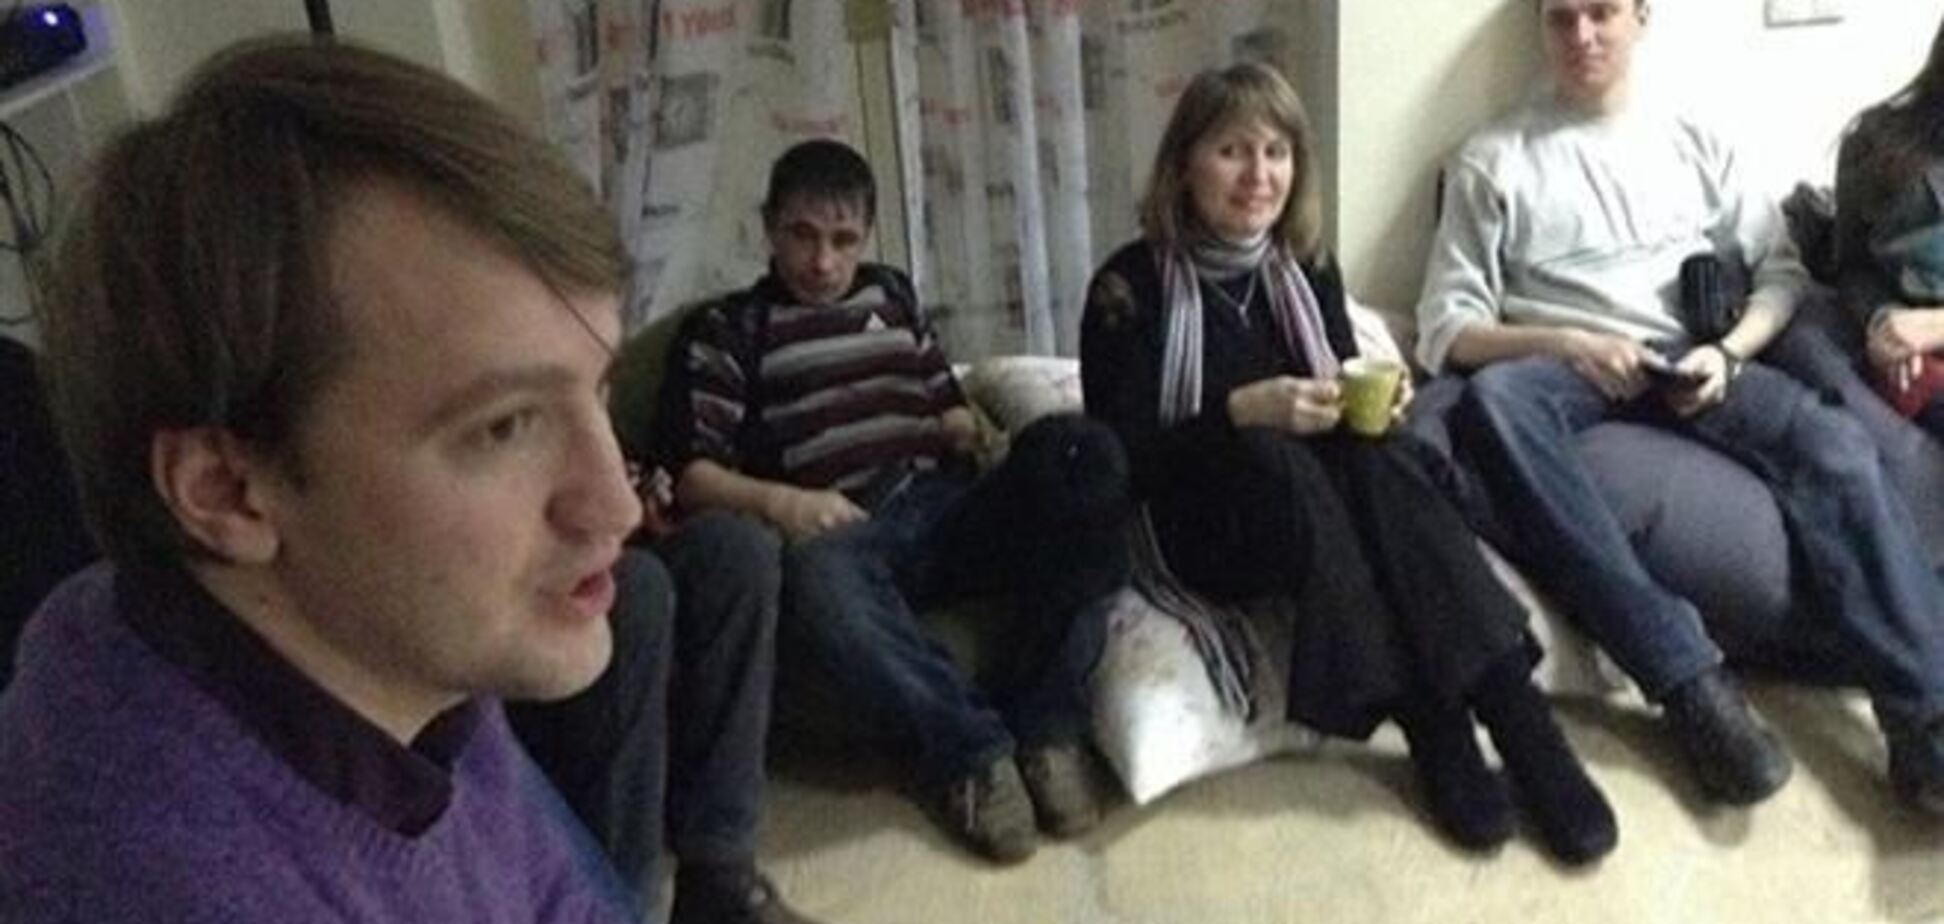 Щодо конфлікту між евромайдановцамі і жителями Донецька проводиться перевірка